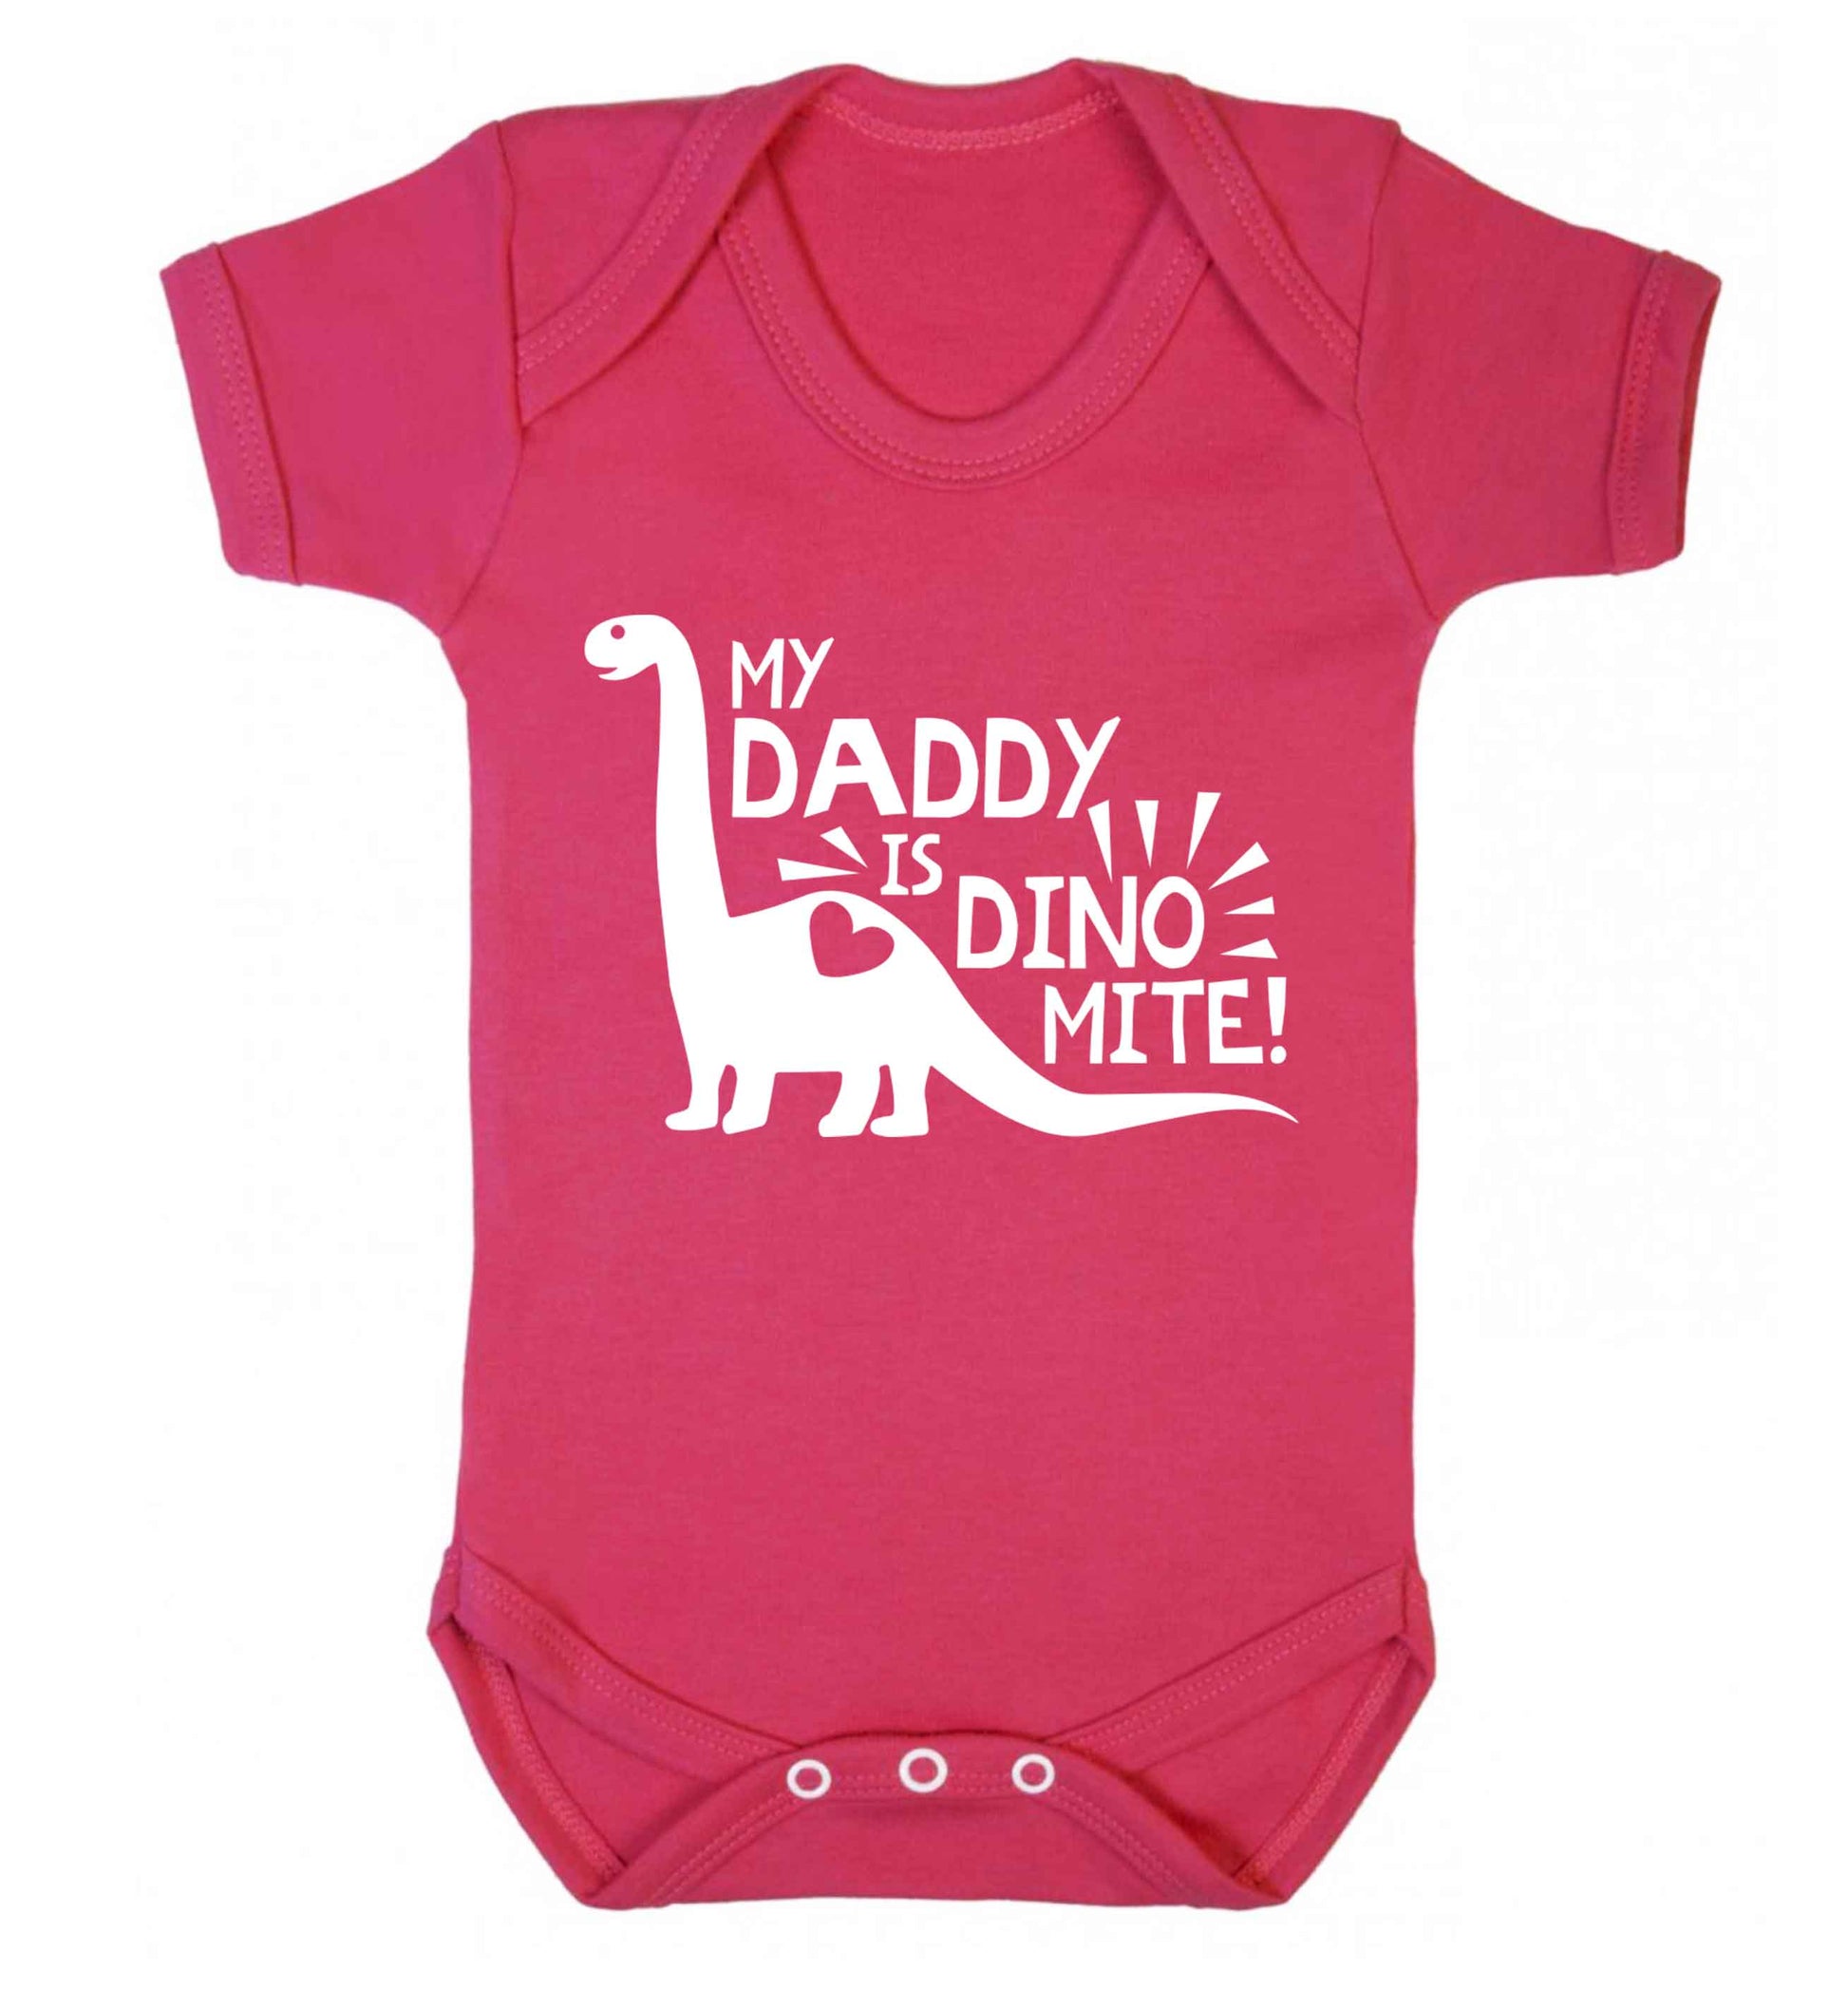 My daddy is dinomite! Baby Vest dark pink 18-24 months